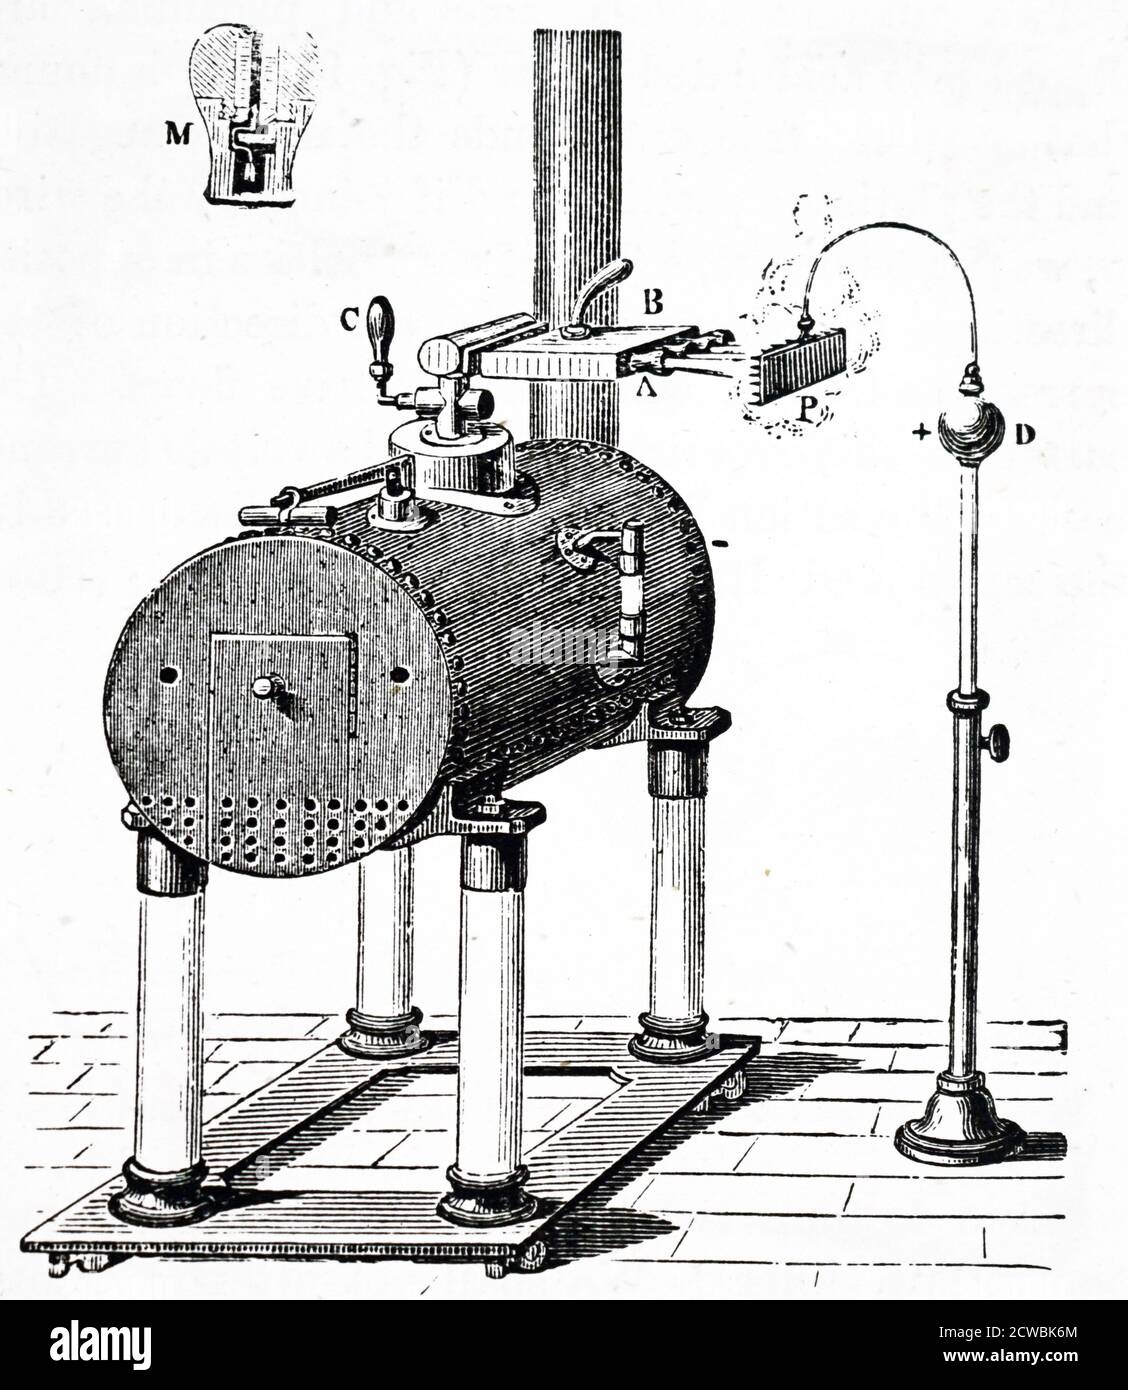 Gravur, die William Armstrongs hydroelektrische Maschine darstellt. Der Kessel wurde auf isolierten Säulen montiert und der Dampf elektrifiziert positiv, der Kessel negativ. Es wurden fast zwei Fuß lange Funken erzeugt. Stockfoto